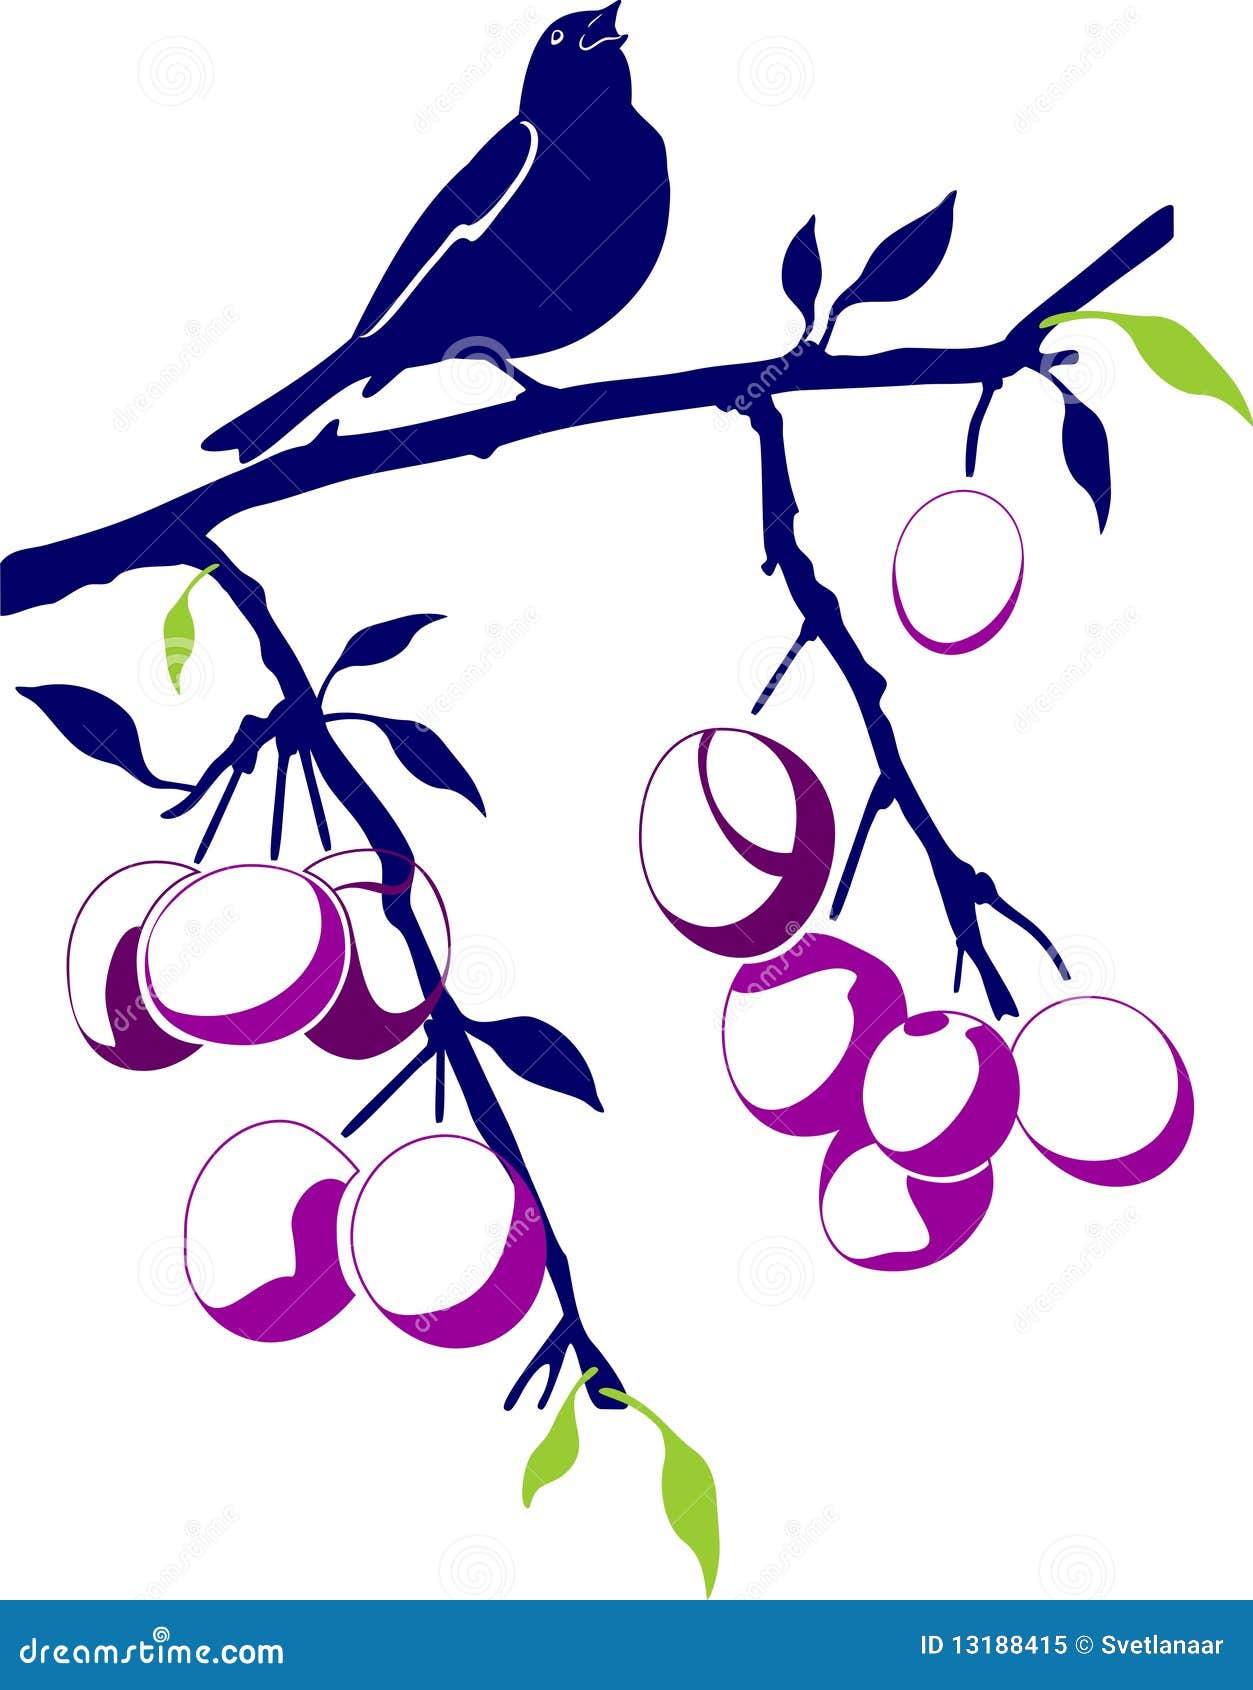 birdie on a plum branch